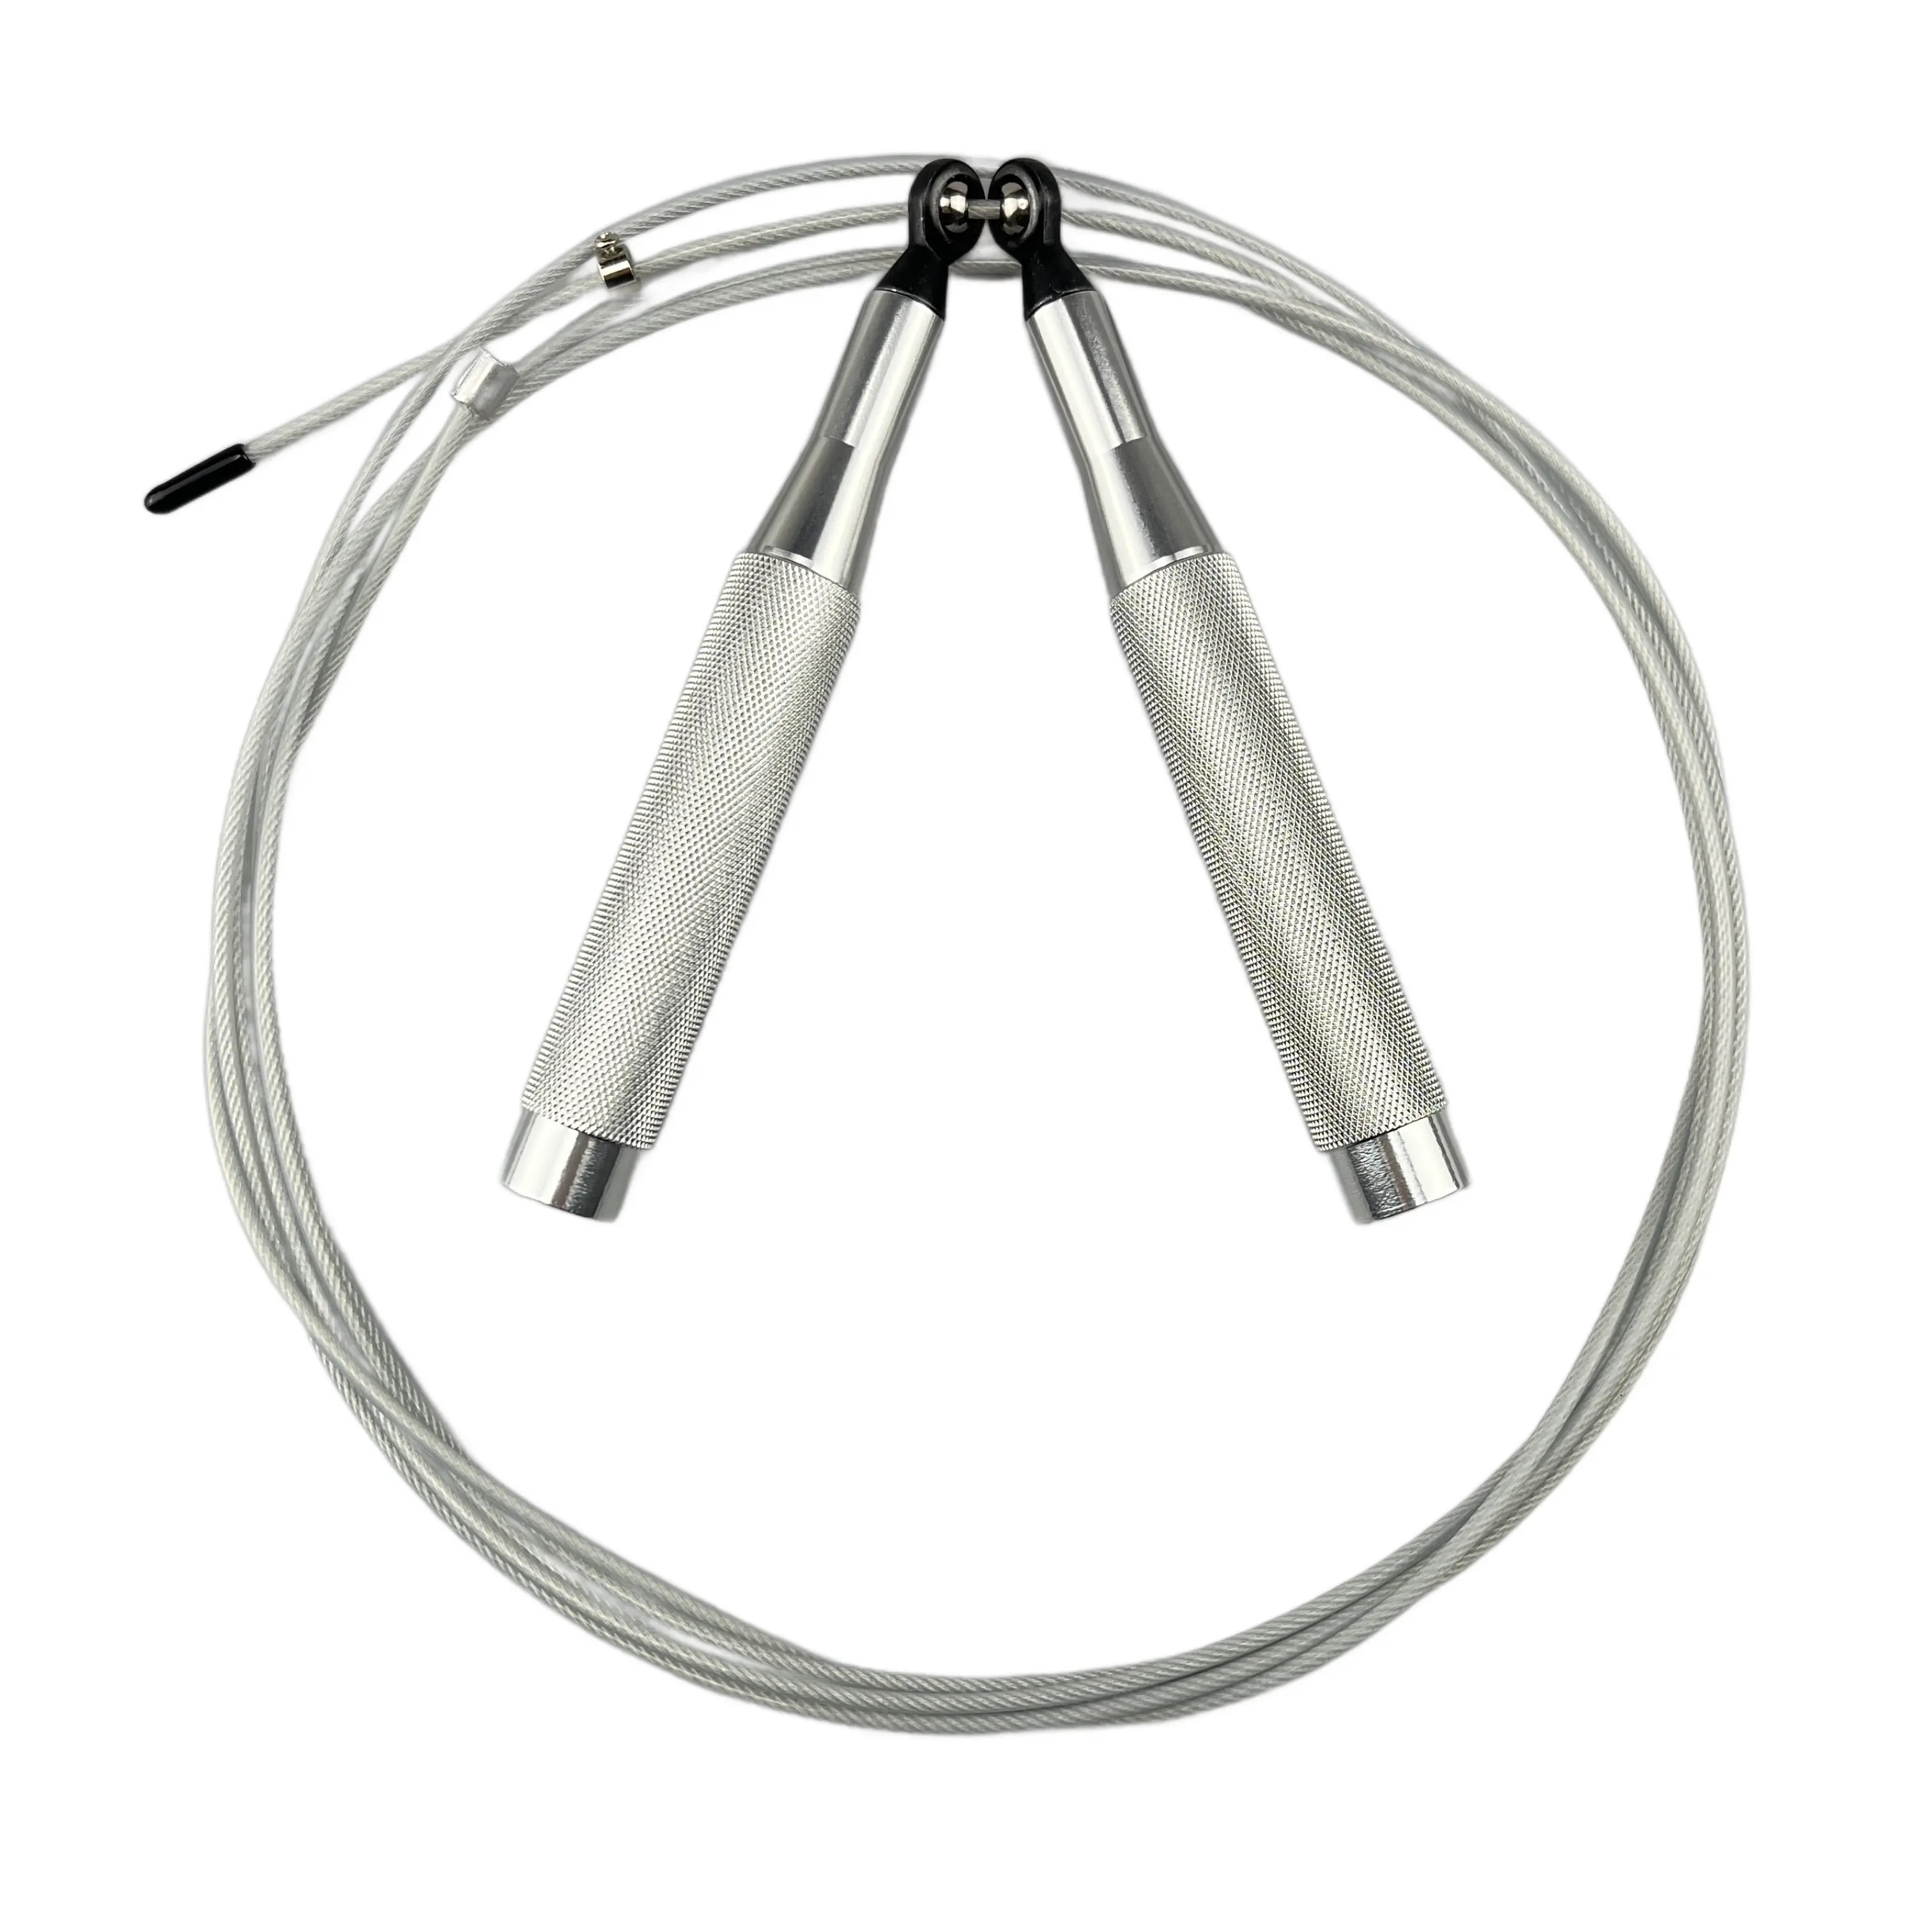 Tali Skipping pegangan aluminium, tali lompat kecepatan tinggi, pegangan aluminium profesional untuk Fitness tali Skipping